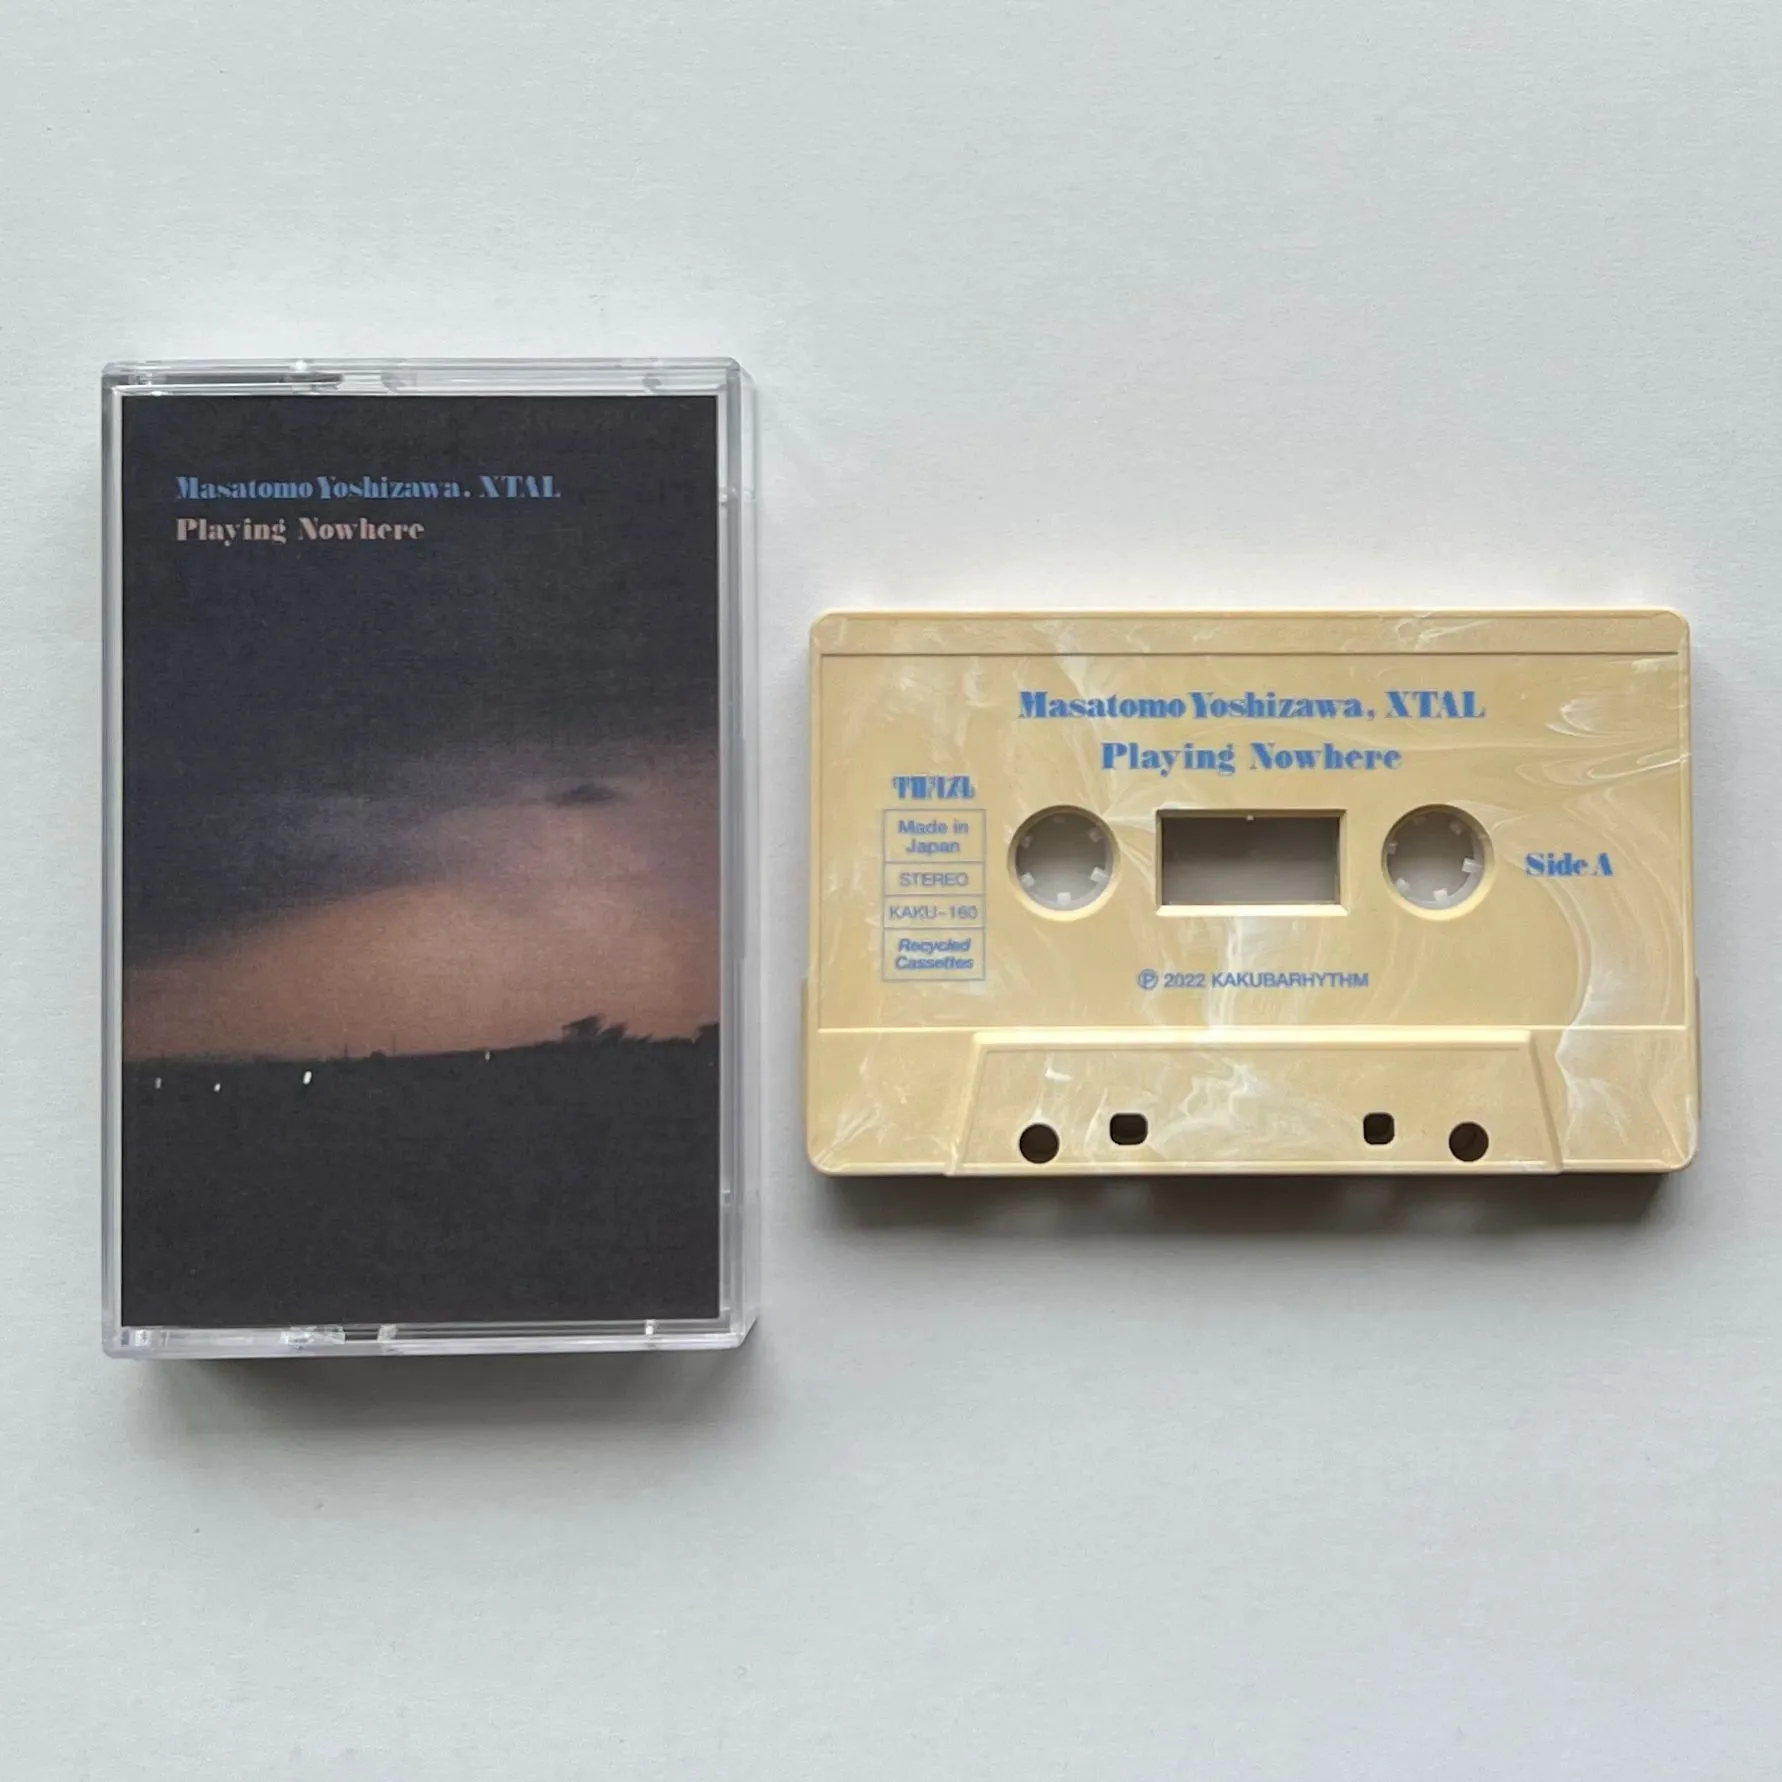 Masatomo Yoshizawa, XTAL - Playing Nowhere : Cassette